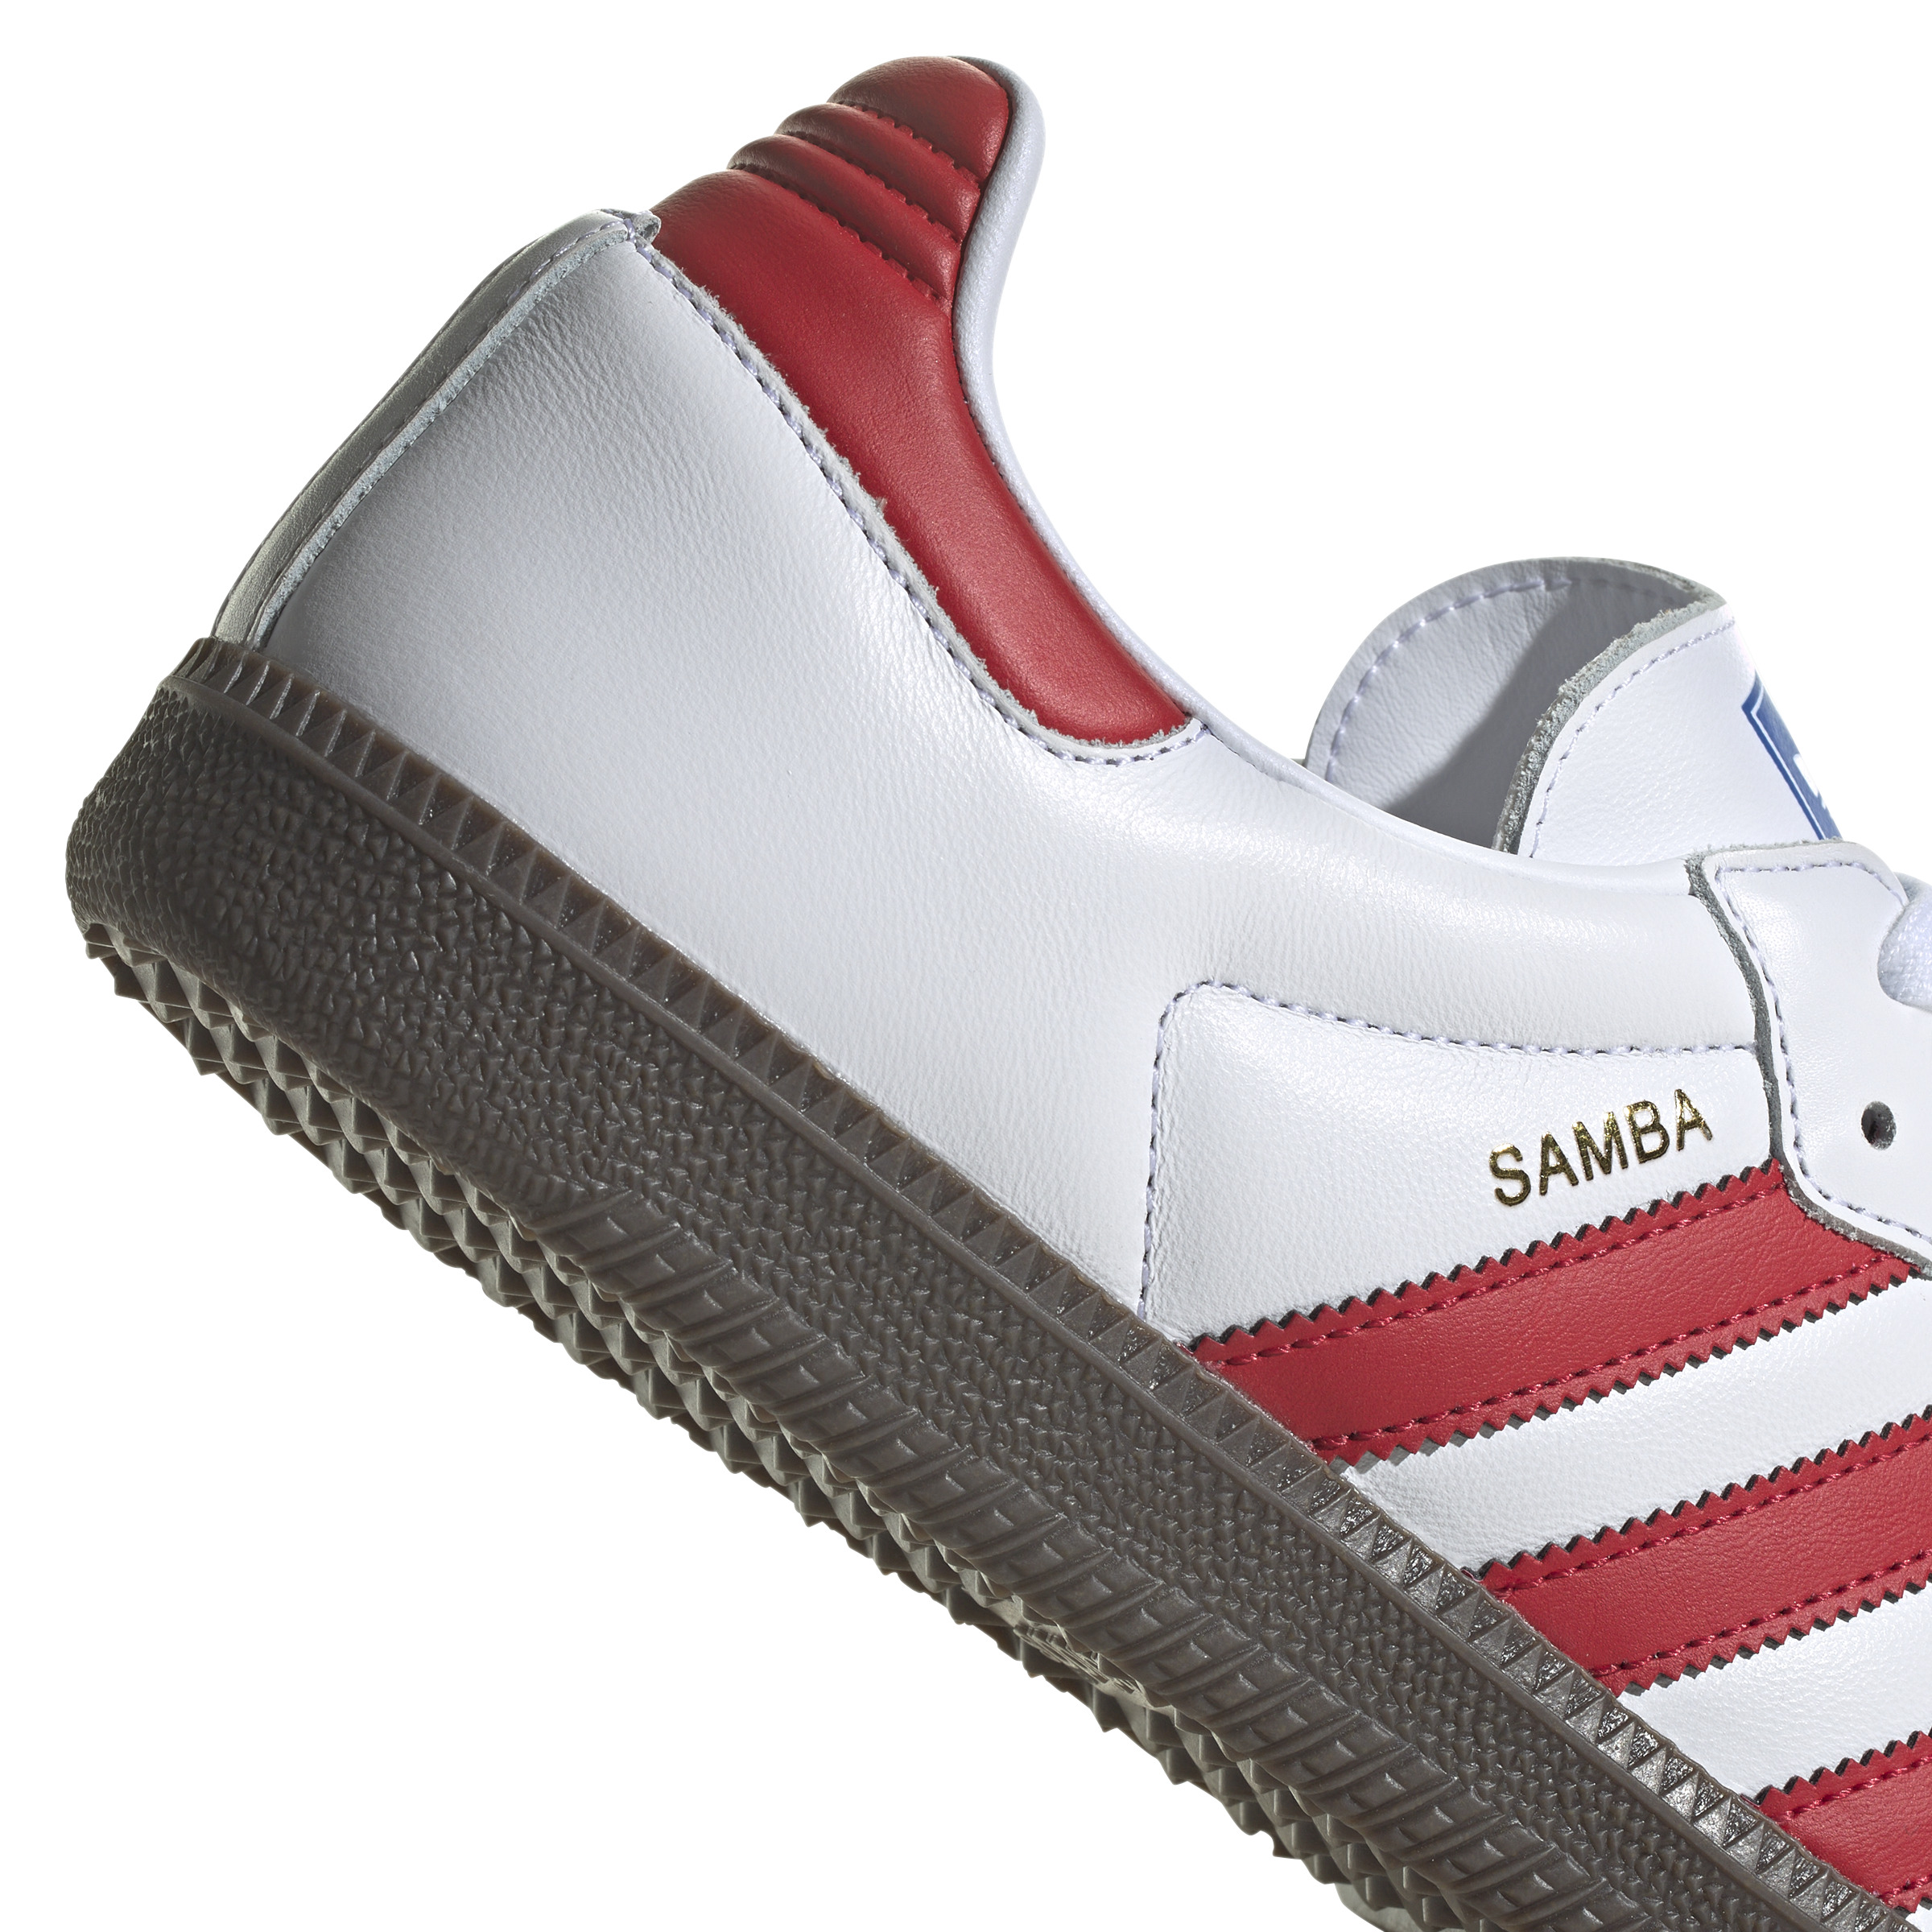 限時セール 【adidas】samba leather サンバ 25.5cm スニーカー